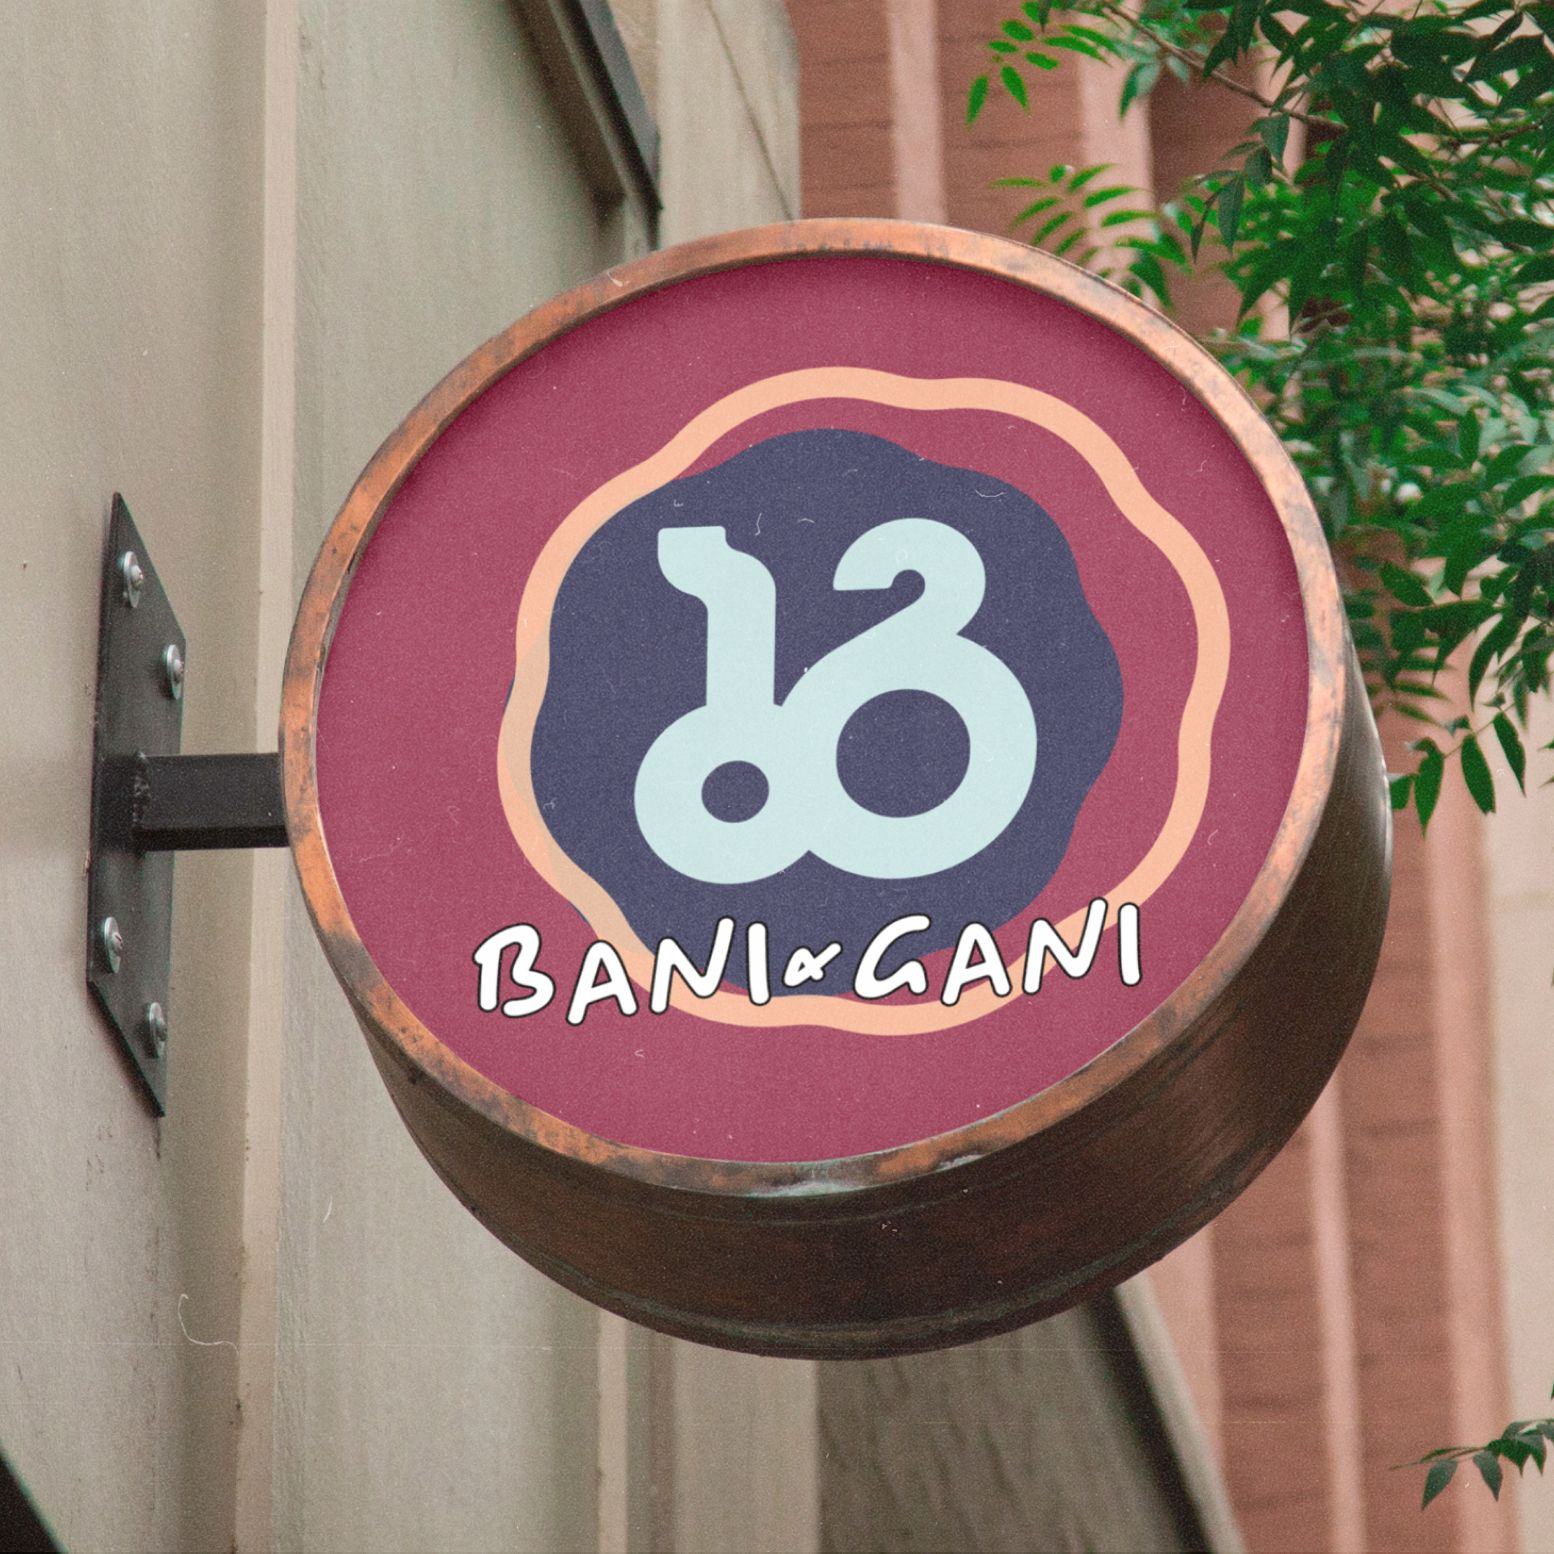 Bani-Gani signage